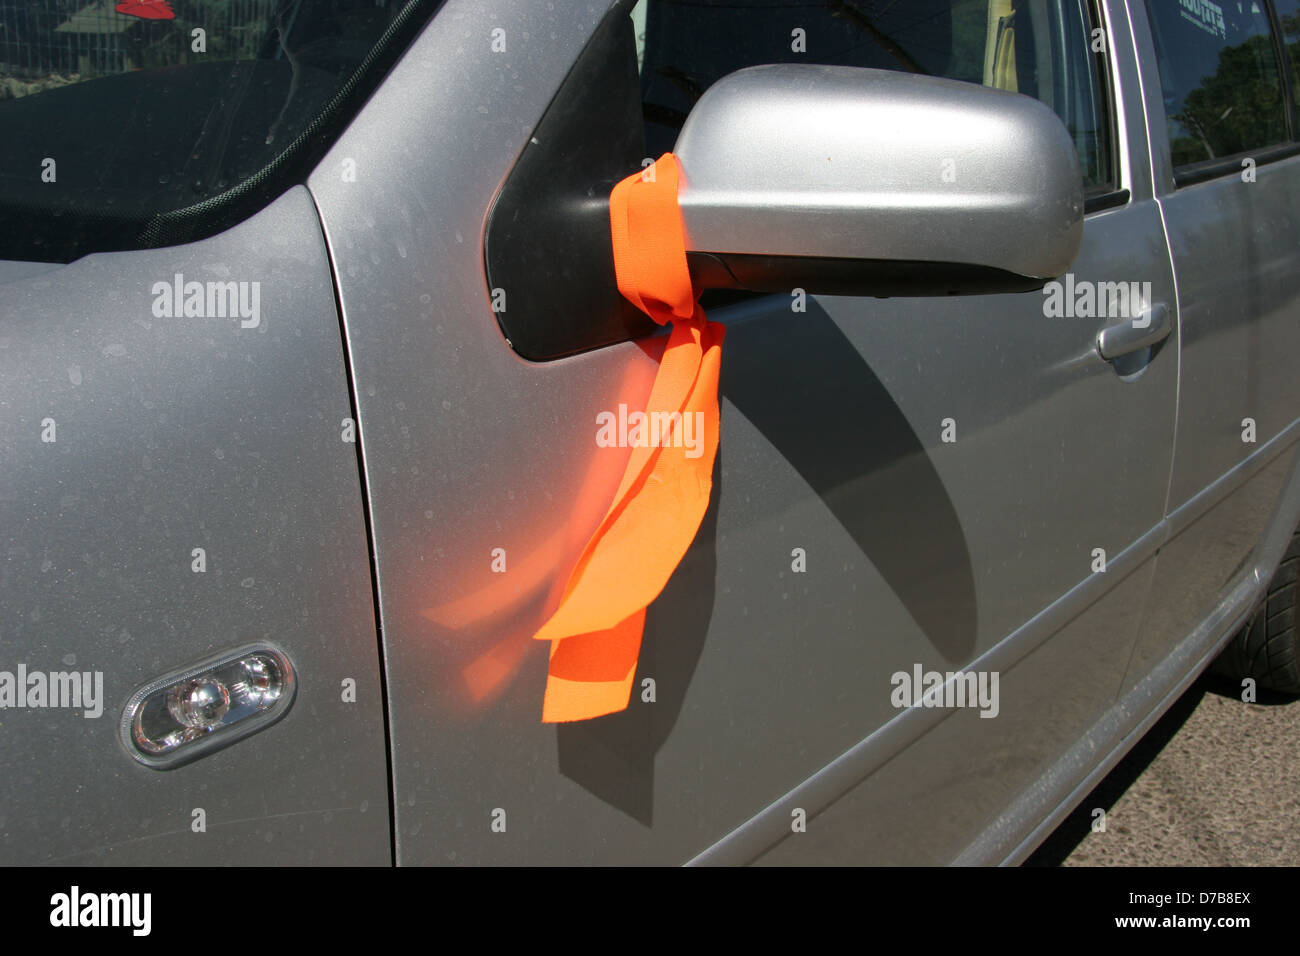 Ruban orange sur une voiture qui symbolise le mouvement de lutte contre le désengagement (2005) Banque D'Images